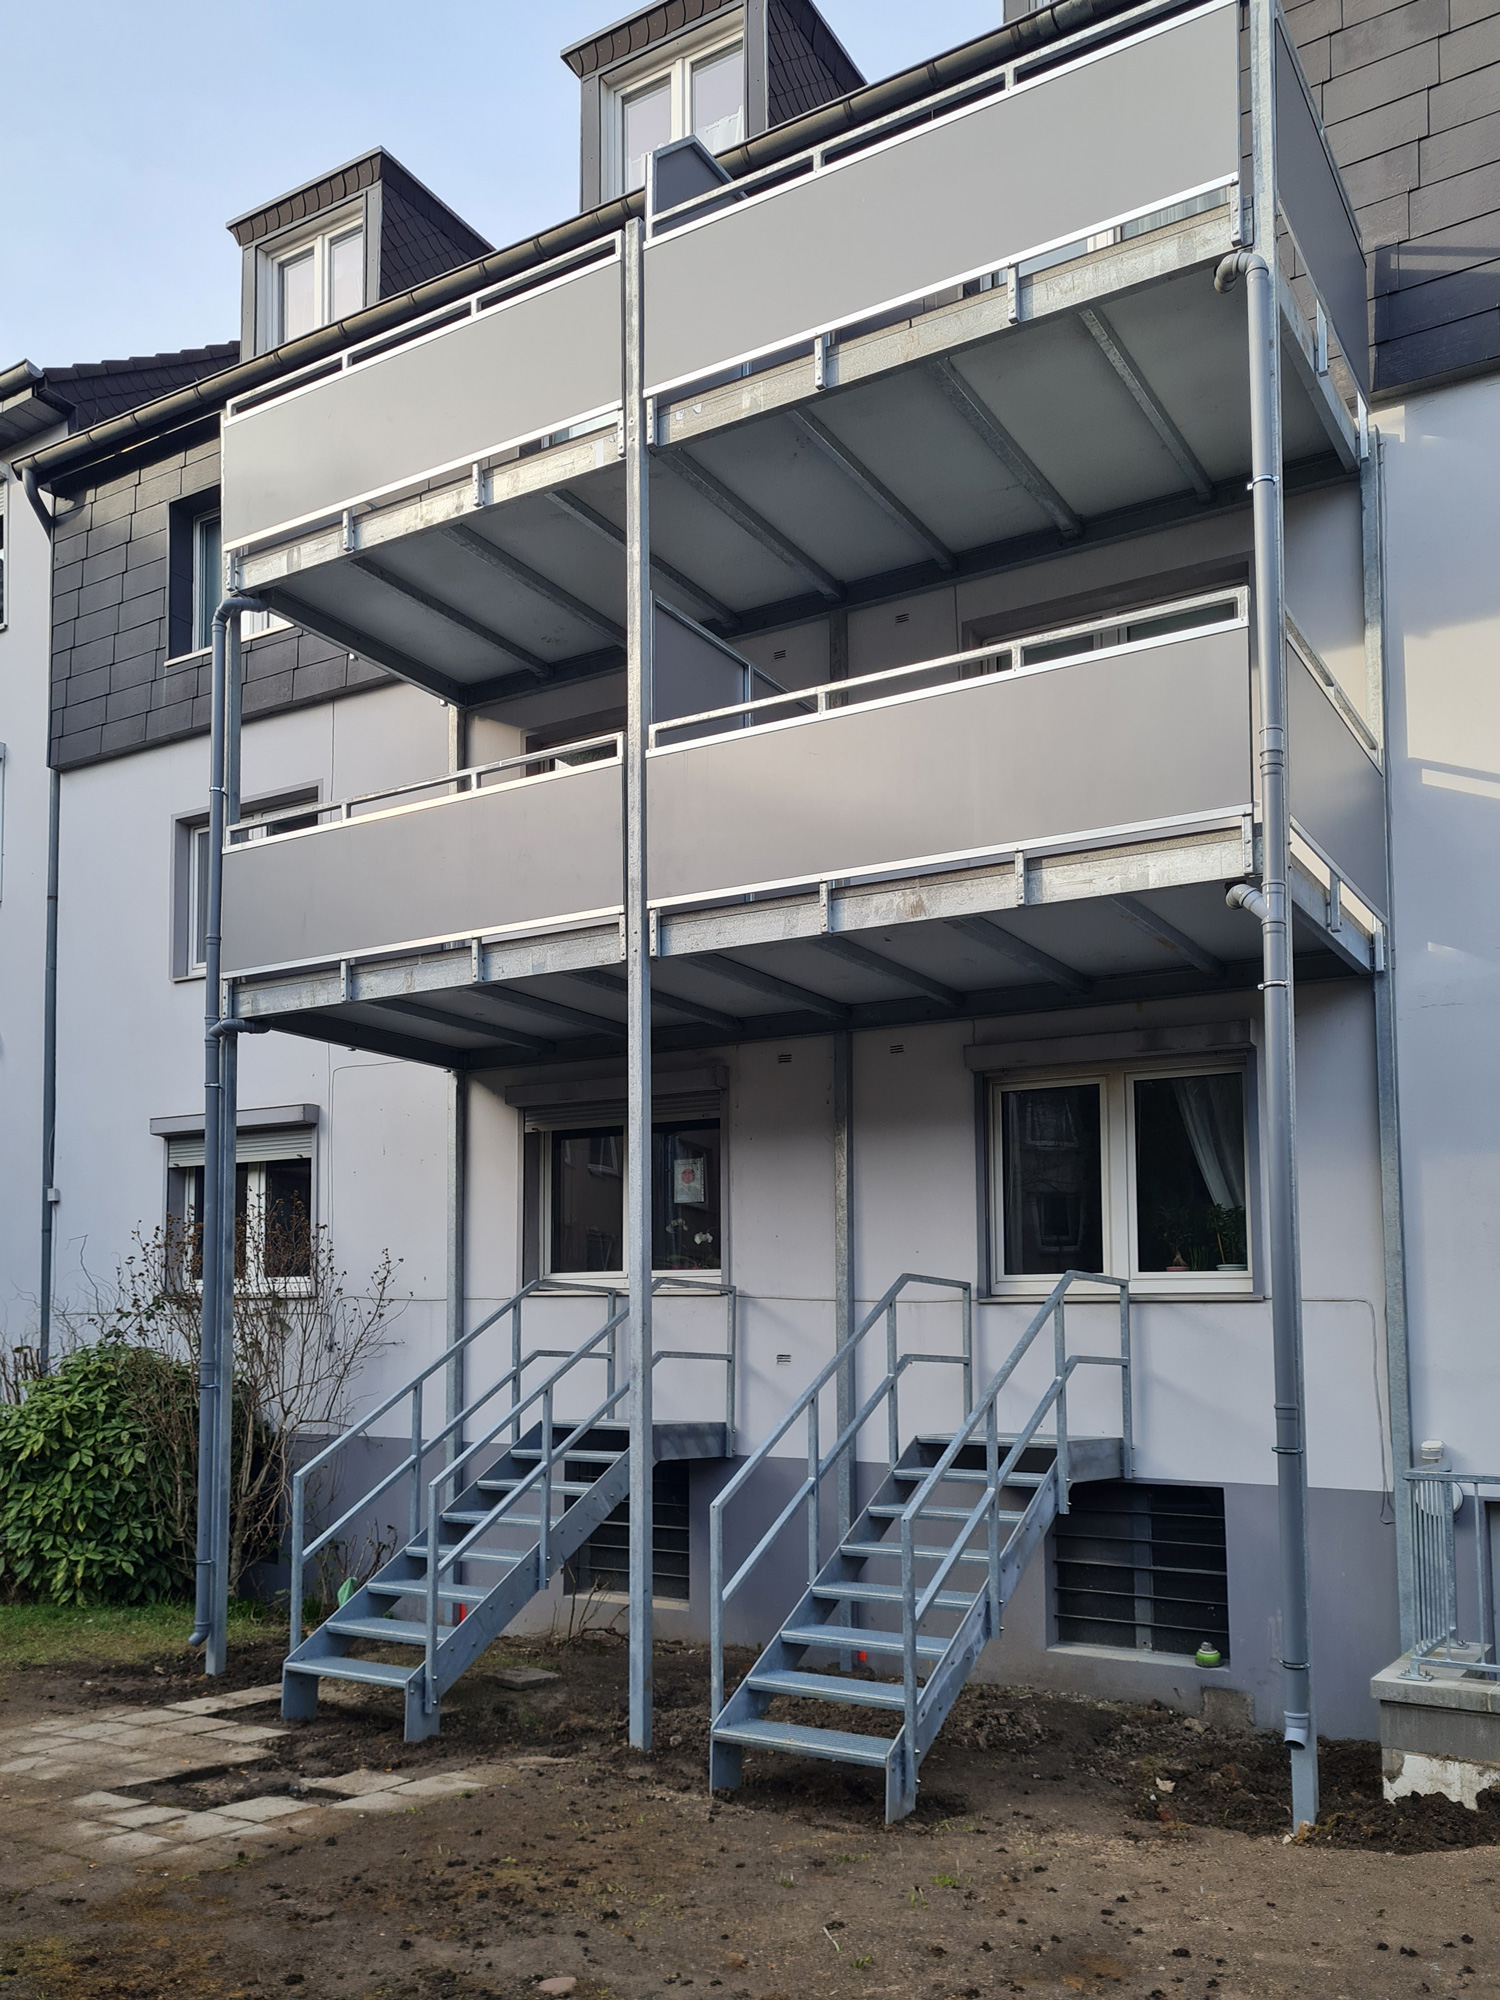 Edelstahlschlosserei Nappenfeld aus Mühlheim montiert Balkon-Anlage in Mülheim